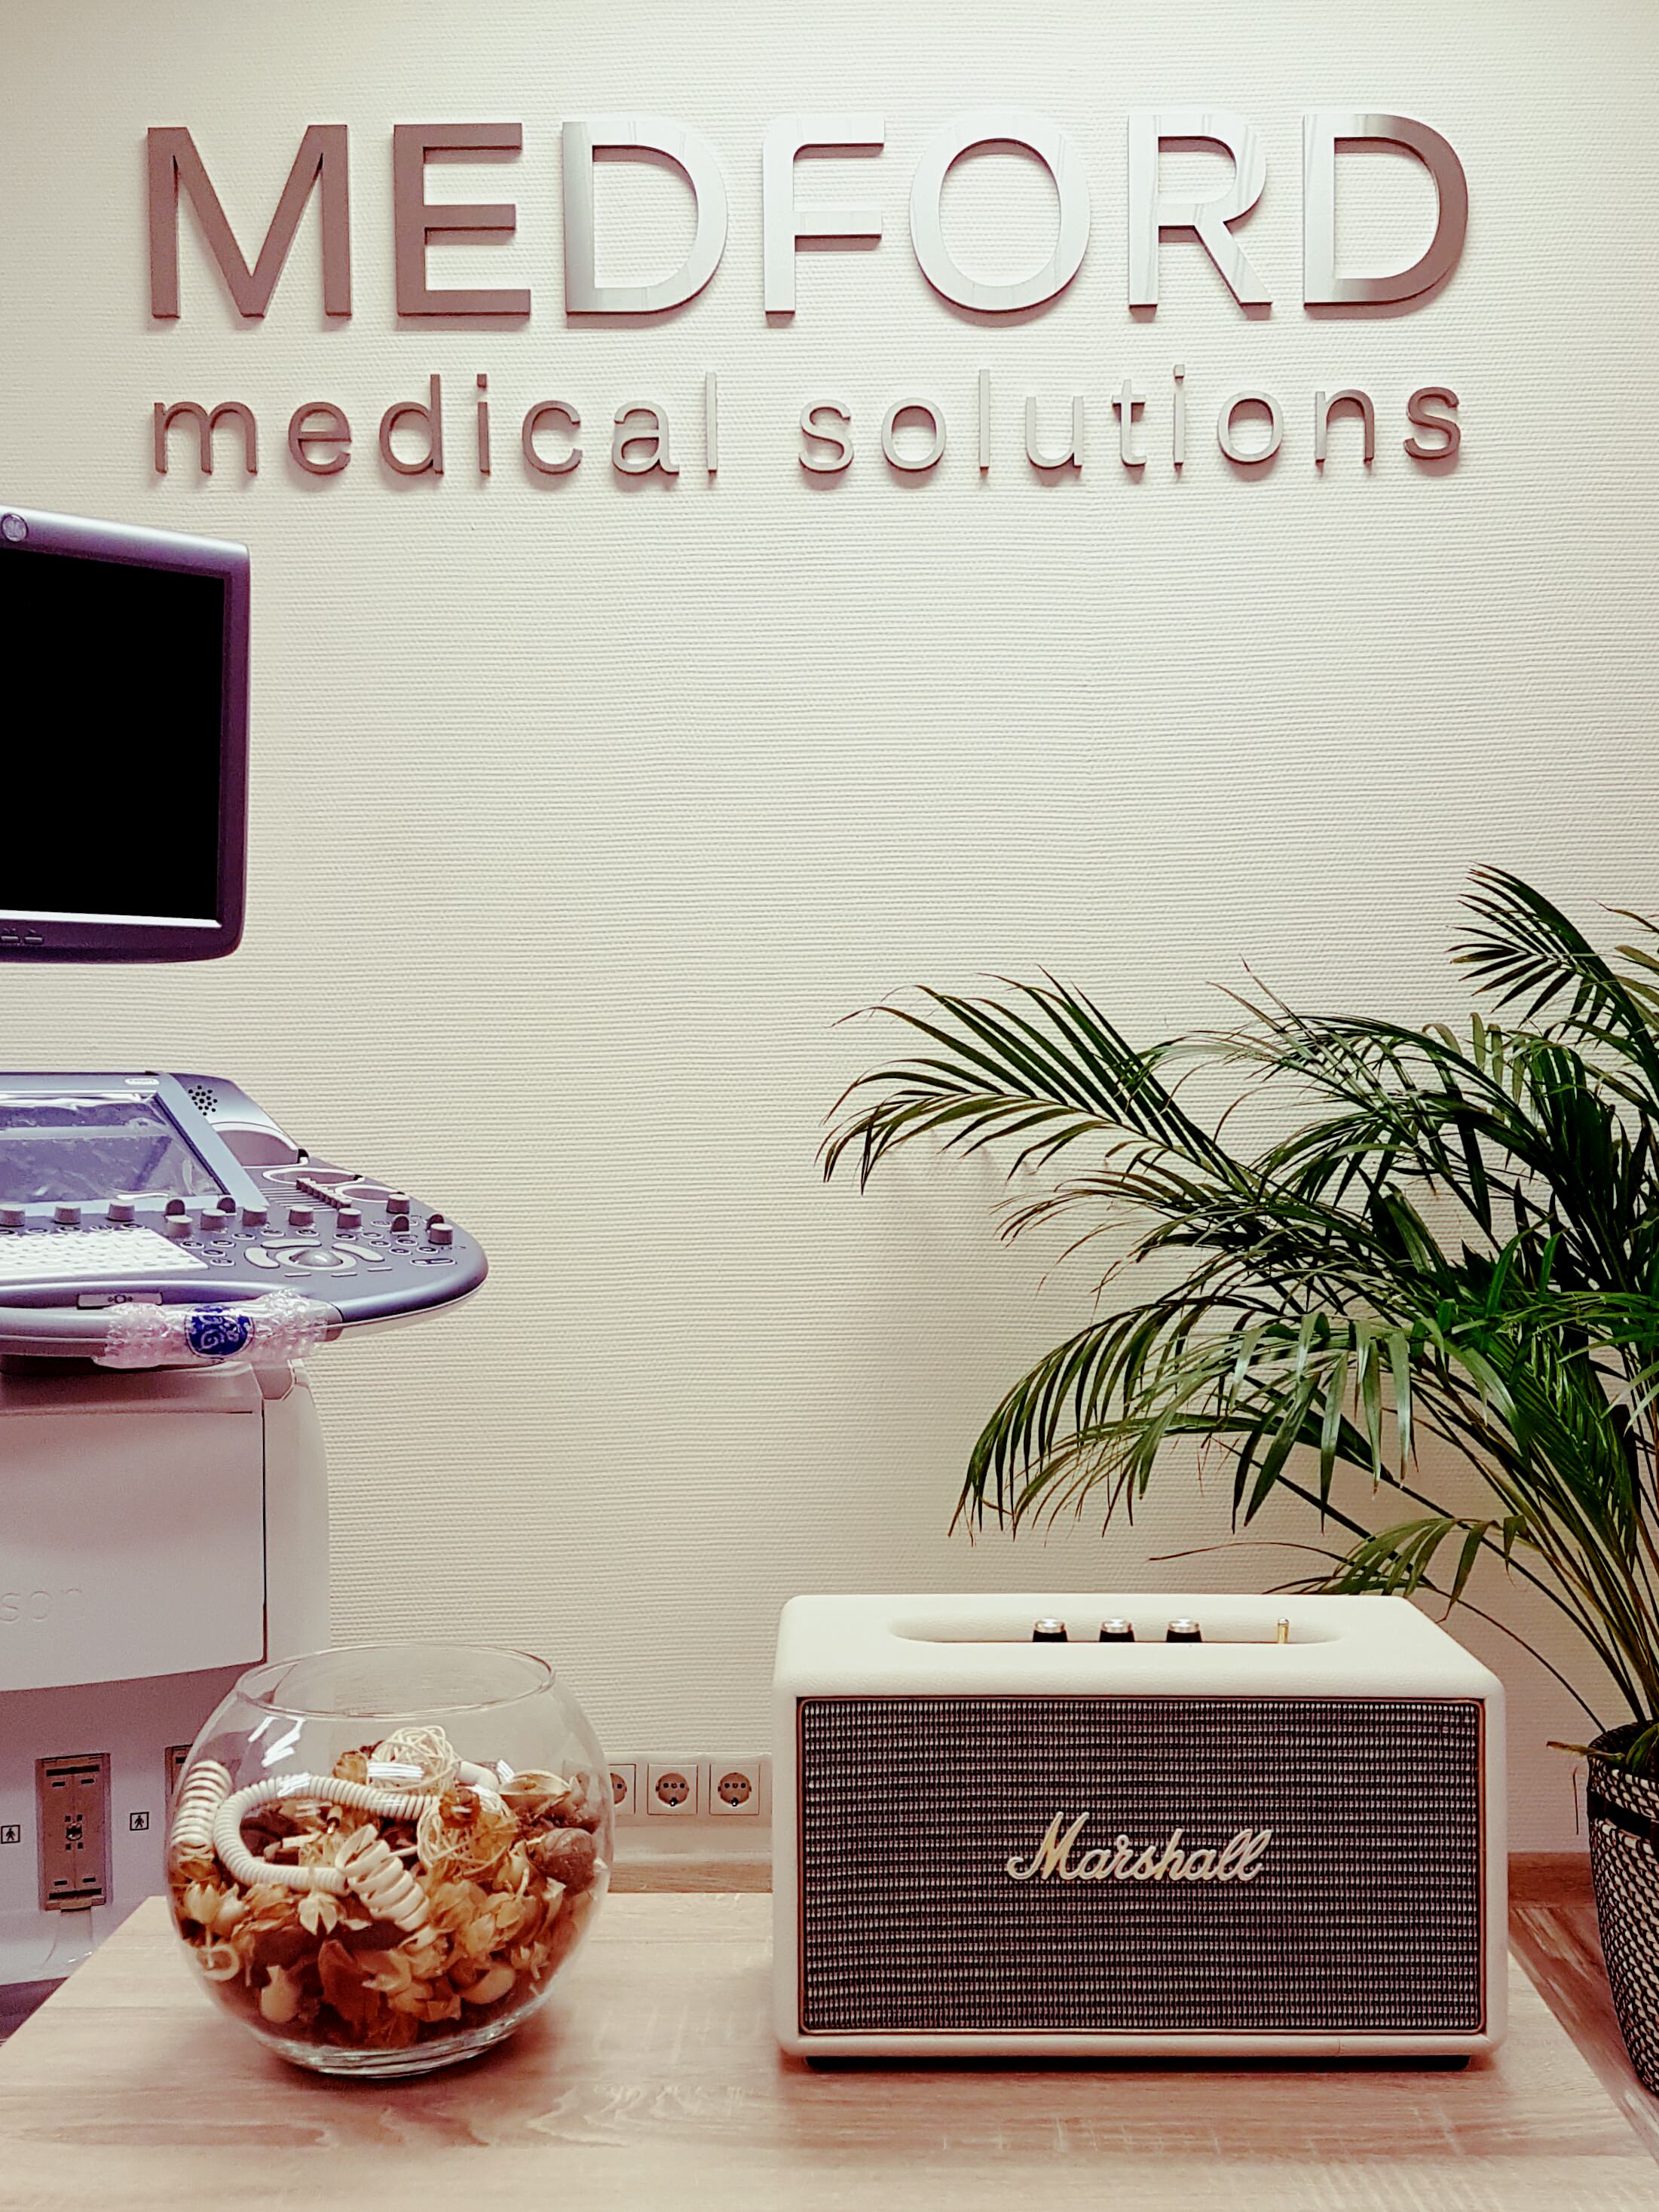 Medford Medical Solutions